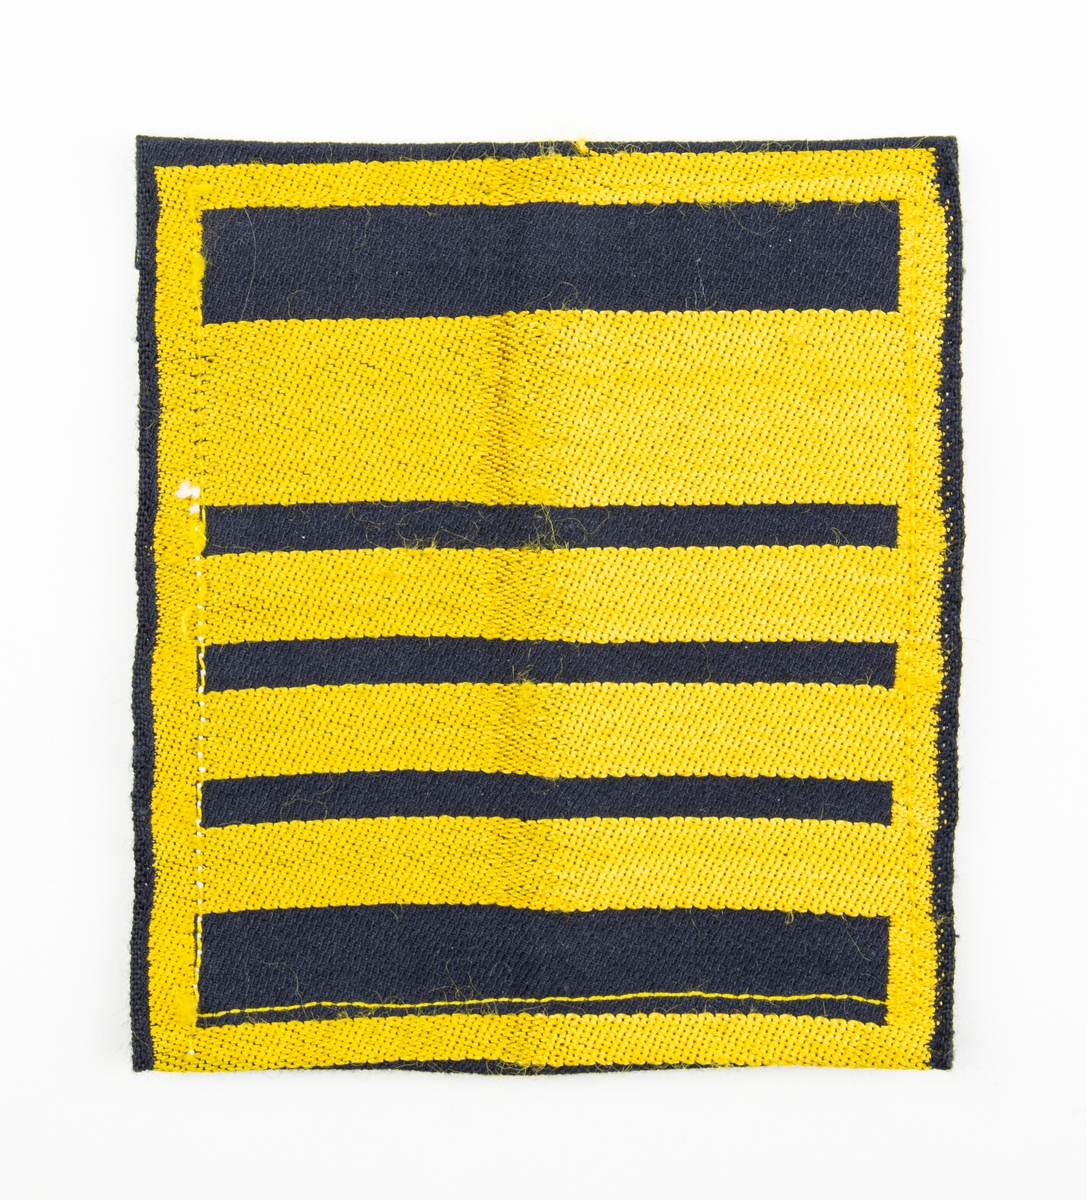 Ärmmatta, överste, med invävd gradbeteckning i gult på svart botten. På baksidan fastsydda kardborreband.